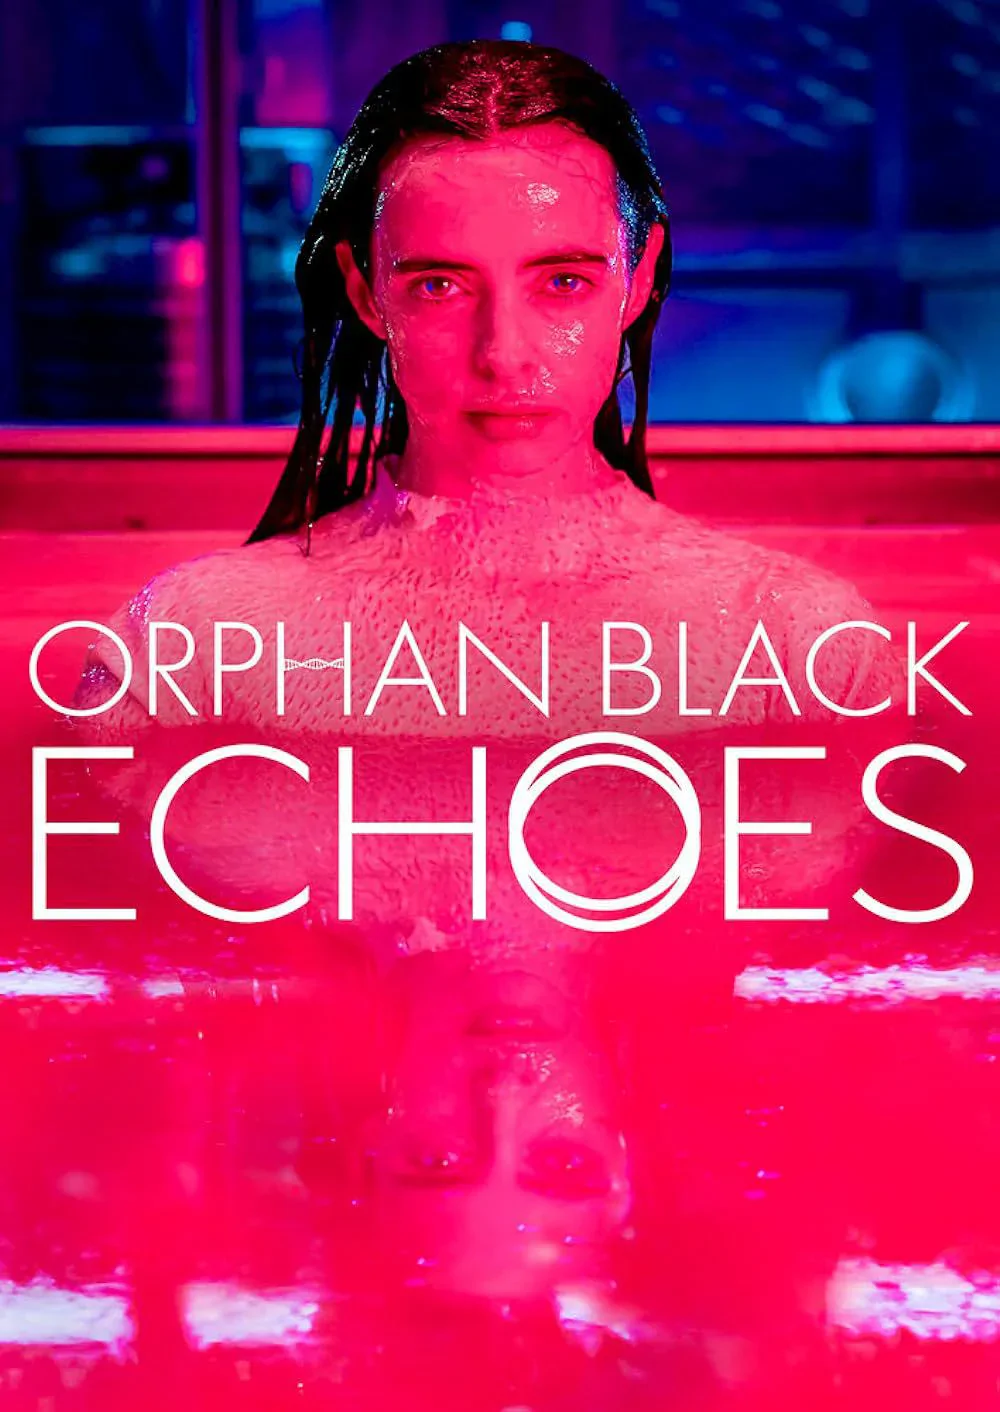 Orphan Black: Echa - oceniamy dwa pierwsze odcinki serialu z Krysten Ritter!